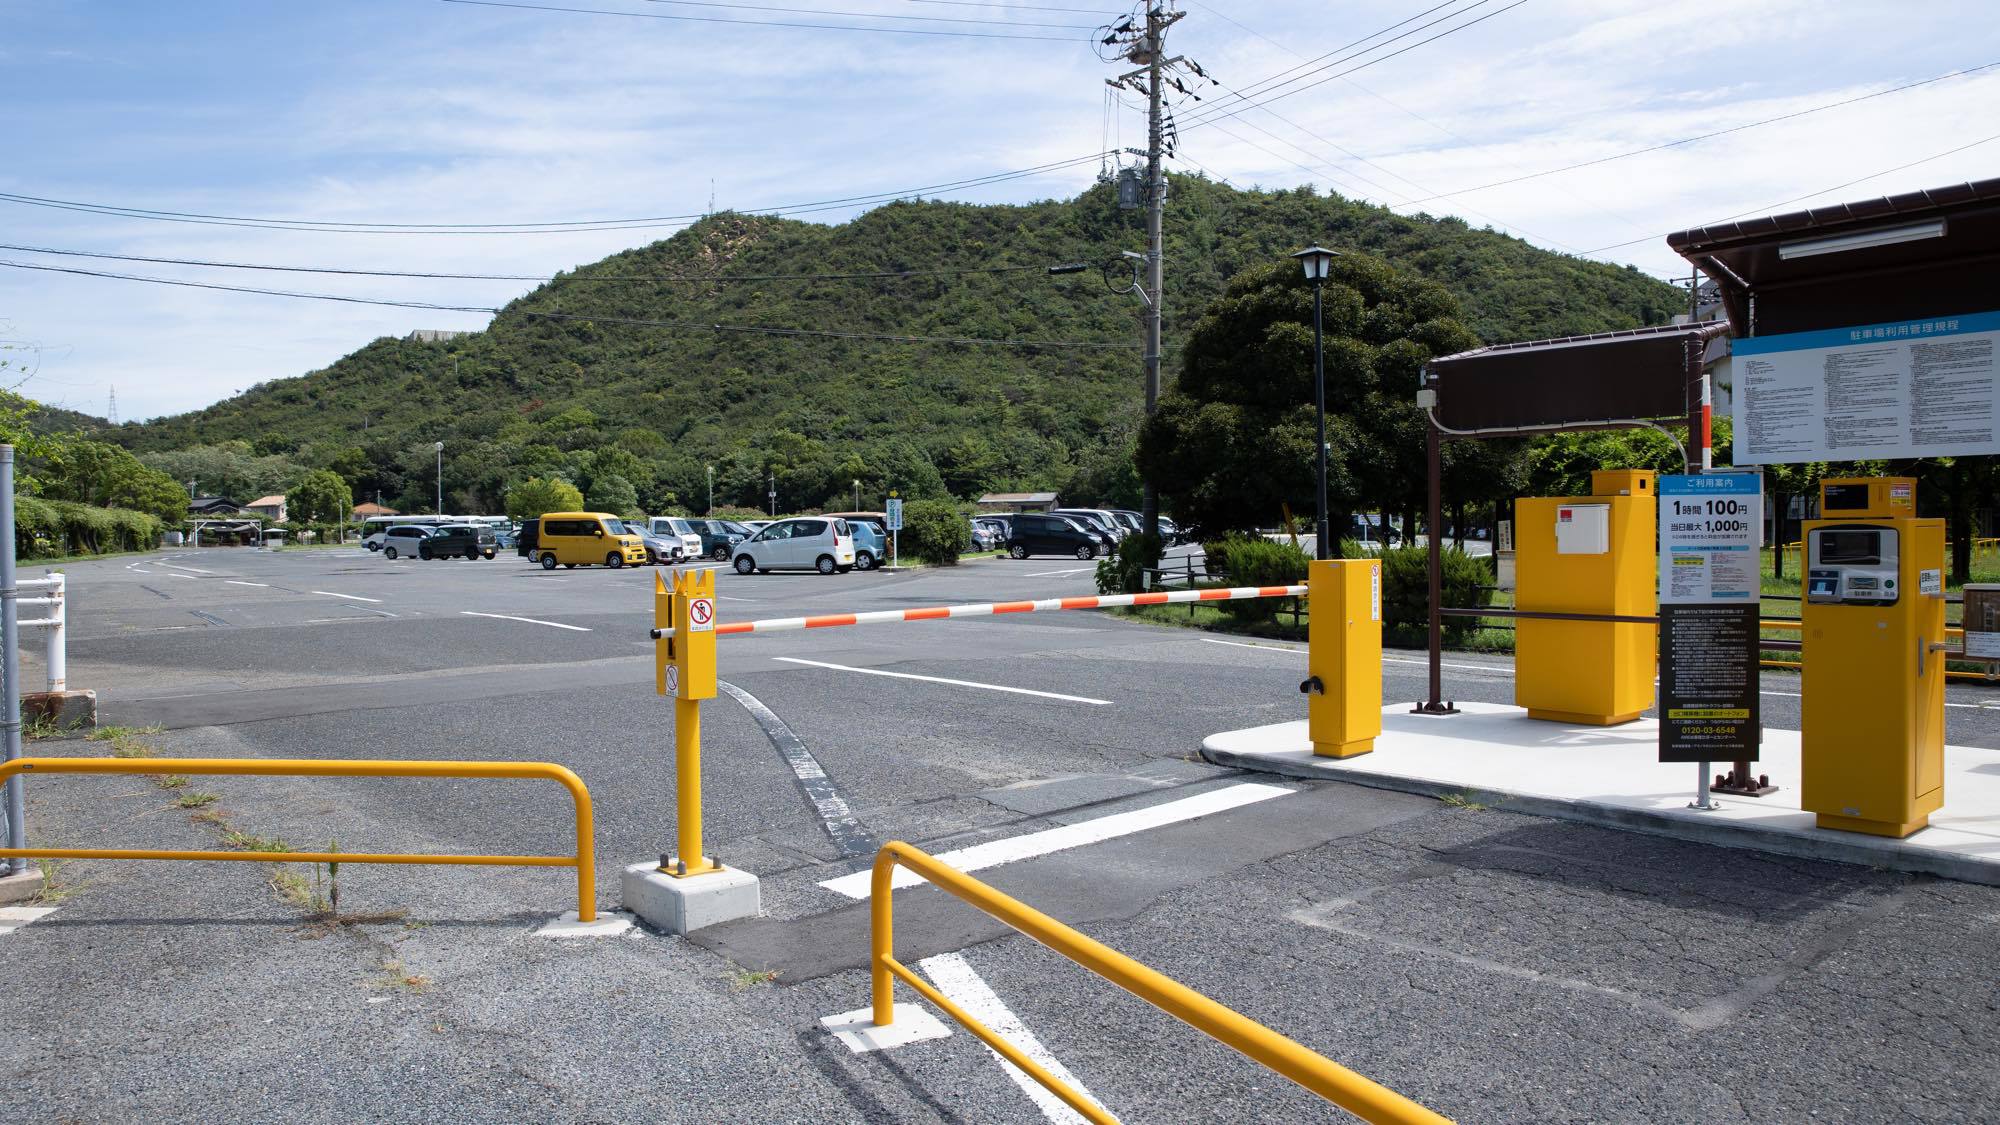 駐車場は「渋川観光駐車場」をご利用ください。チェックアウトの際に無料適用しますので駐車券をお忘れなく